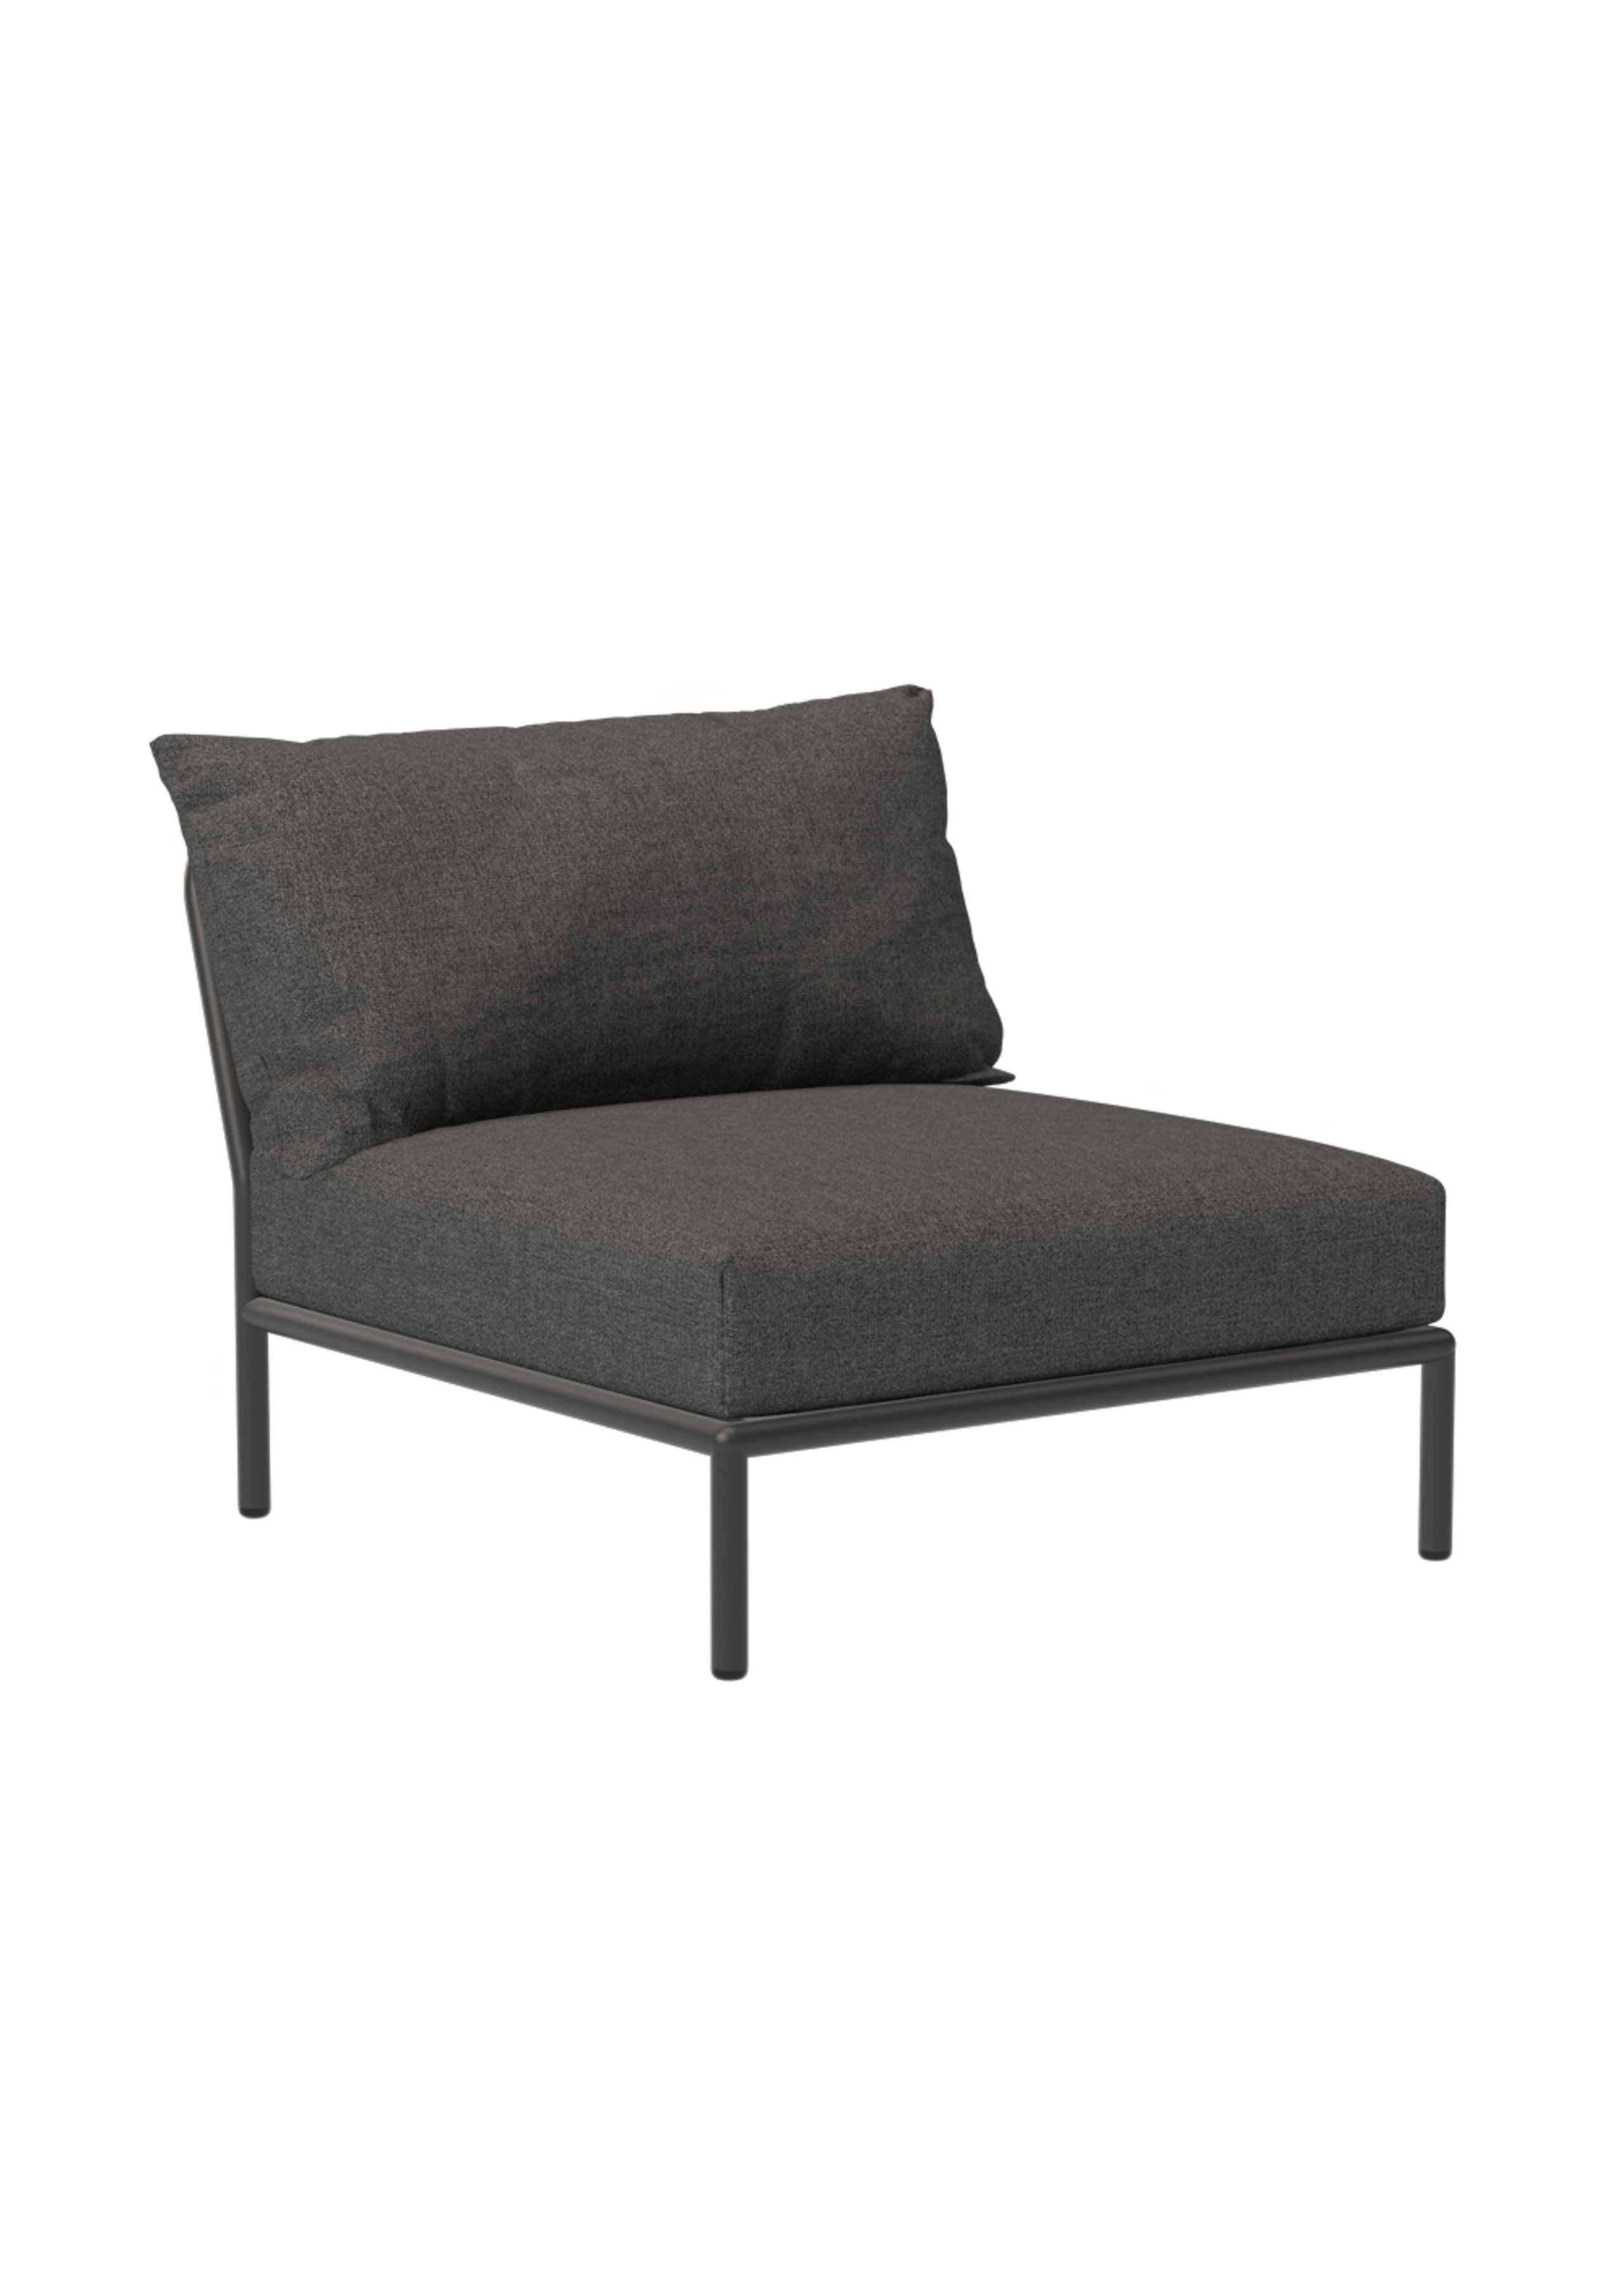 HOUE - Gartenstuhl - LEVEL 2 / Lounge Chair - Dark Grey Basic